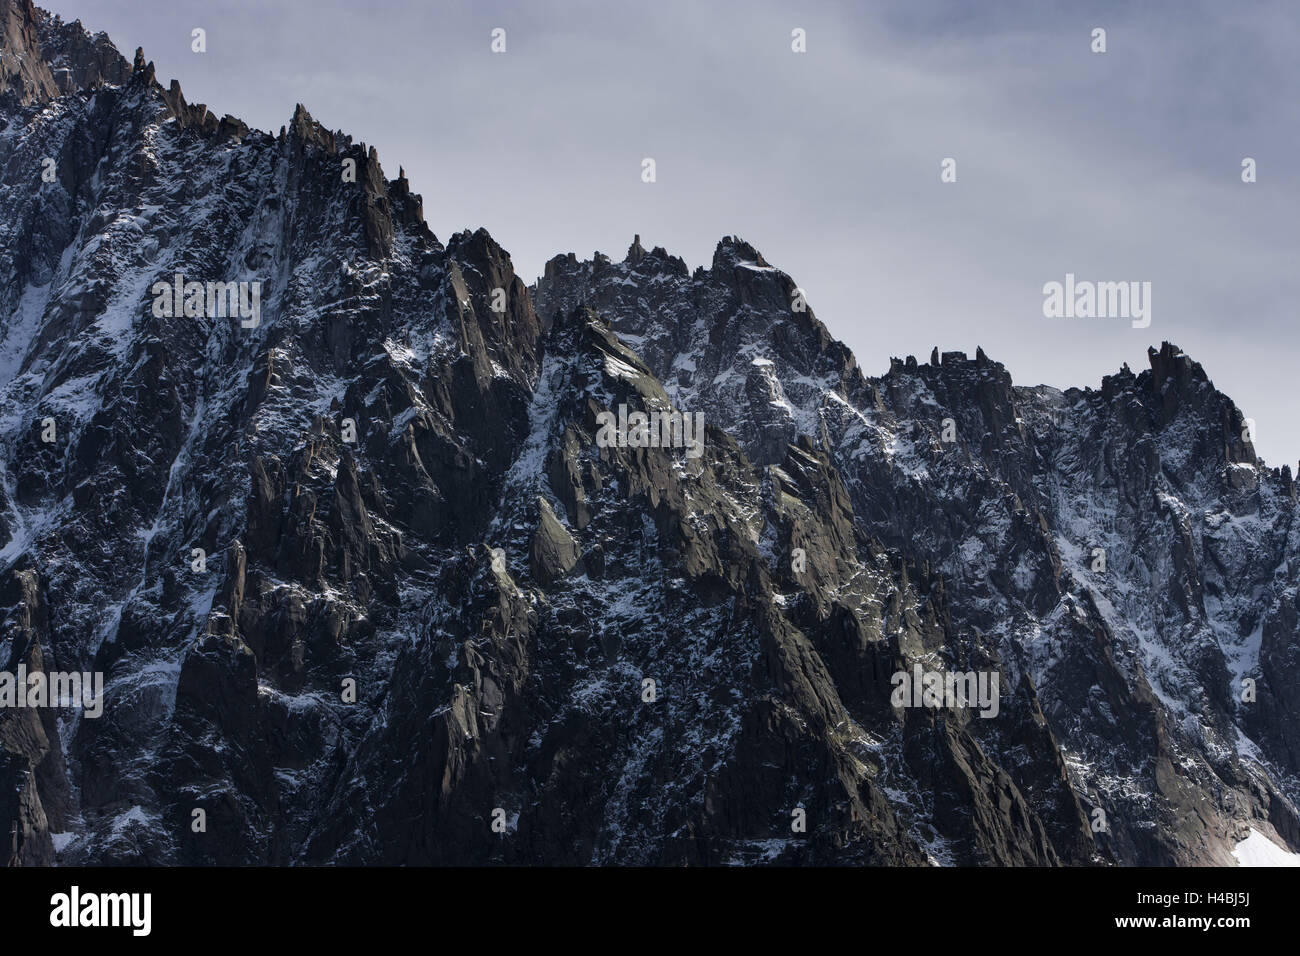 Cresta rocosa del Aiguille usted Dru, Chamonix-Mont-Blanc. Foto de stock